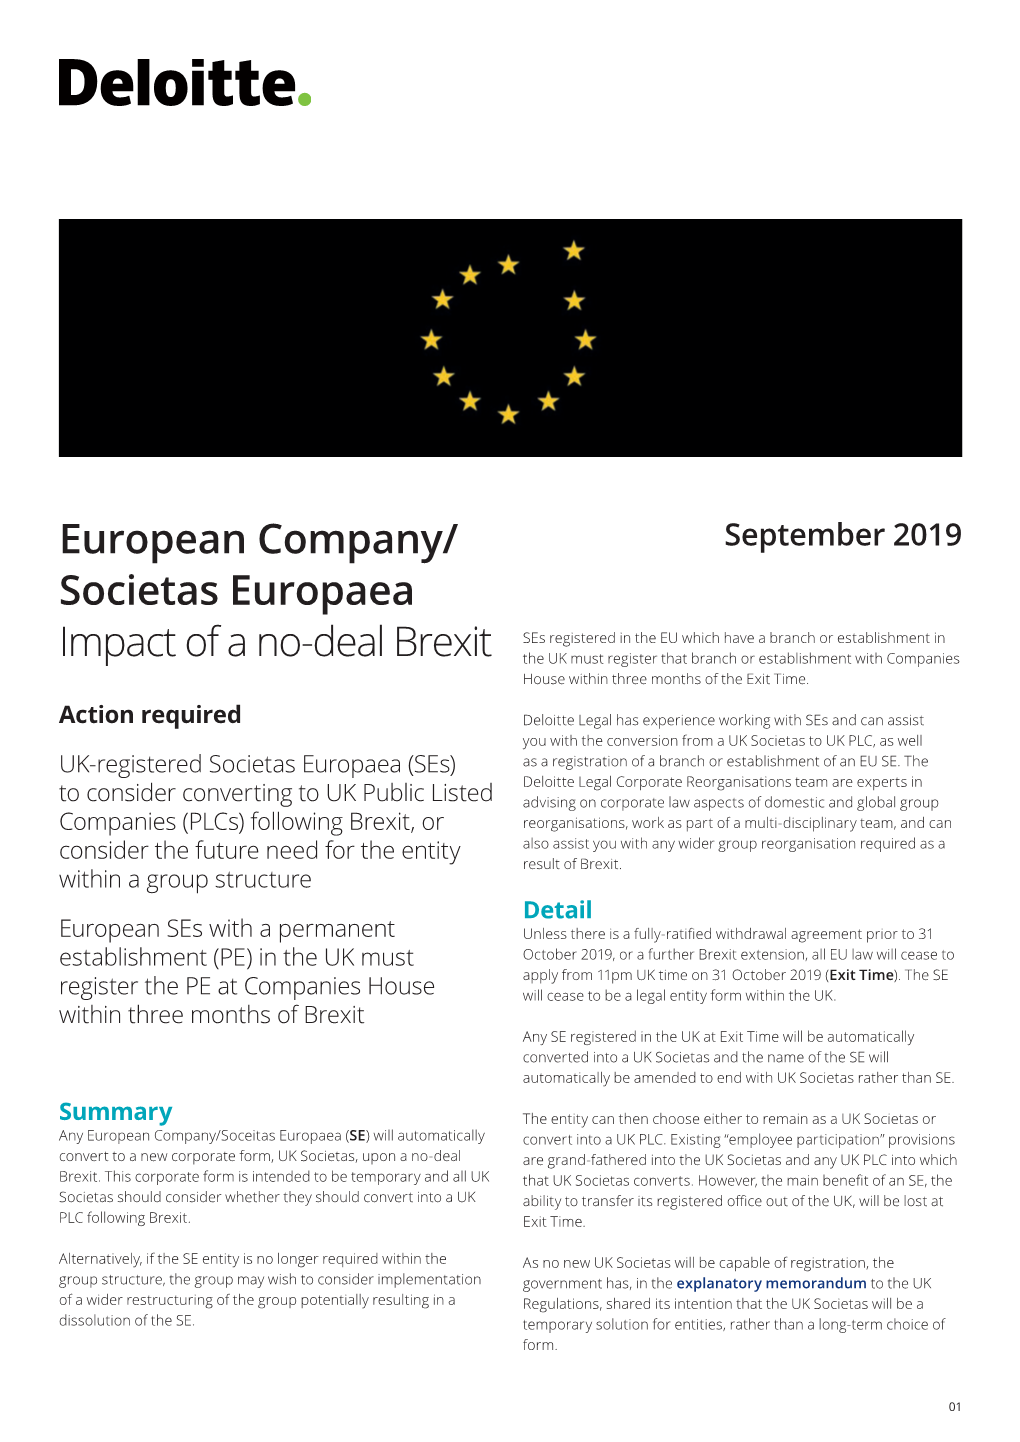 European Company/ Societas Europaea Impact of a No-Deal Brexit